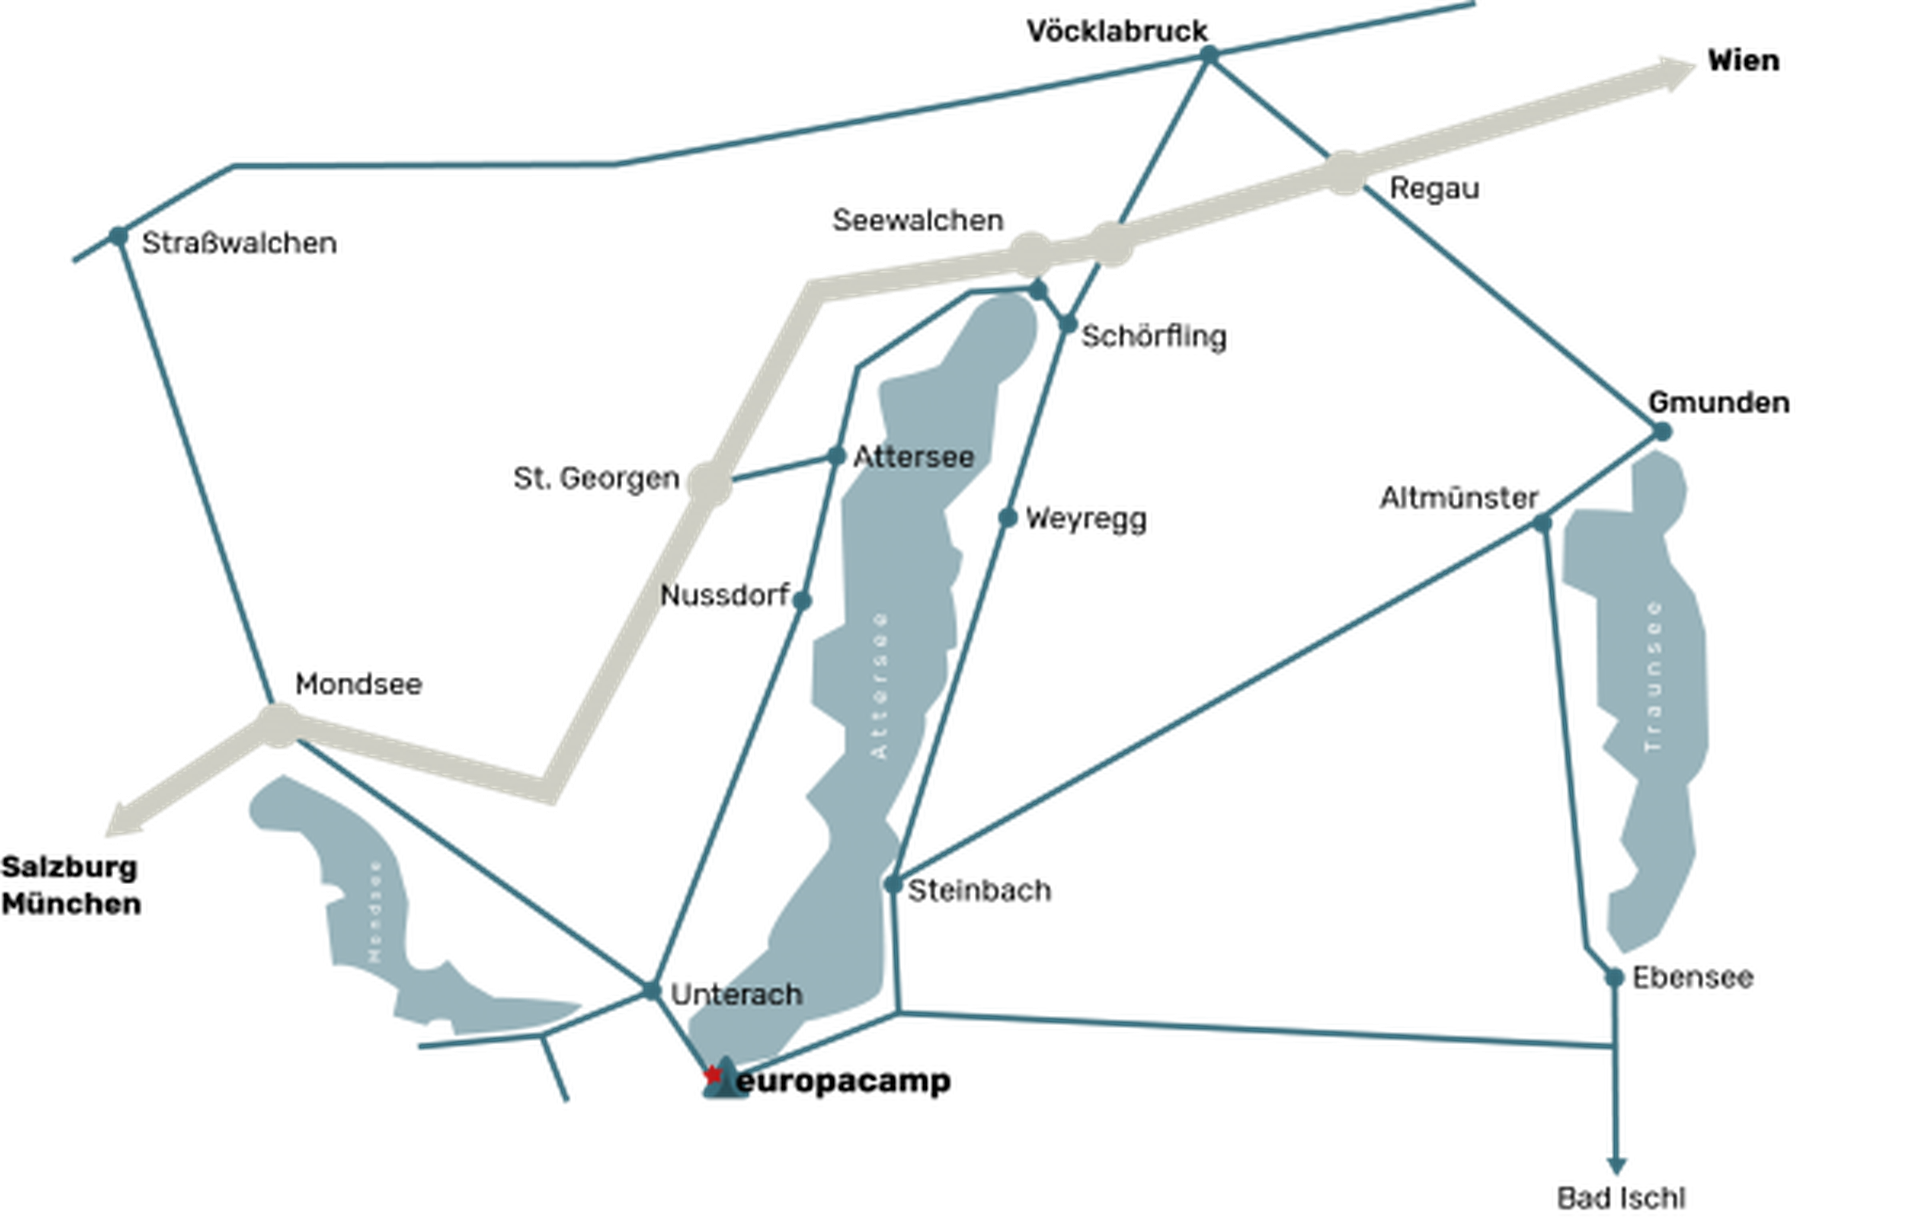 Plan der Attersee-Region